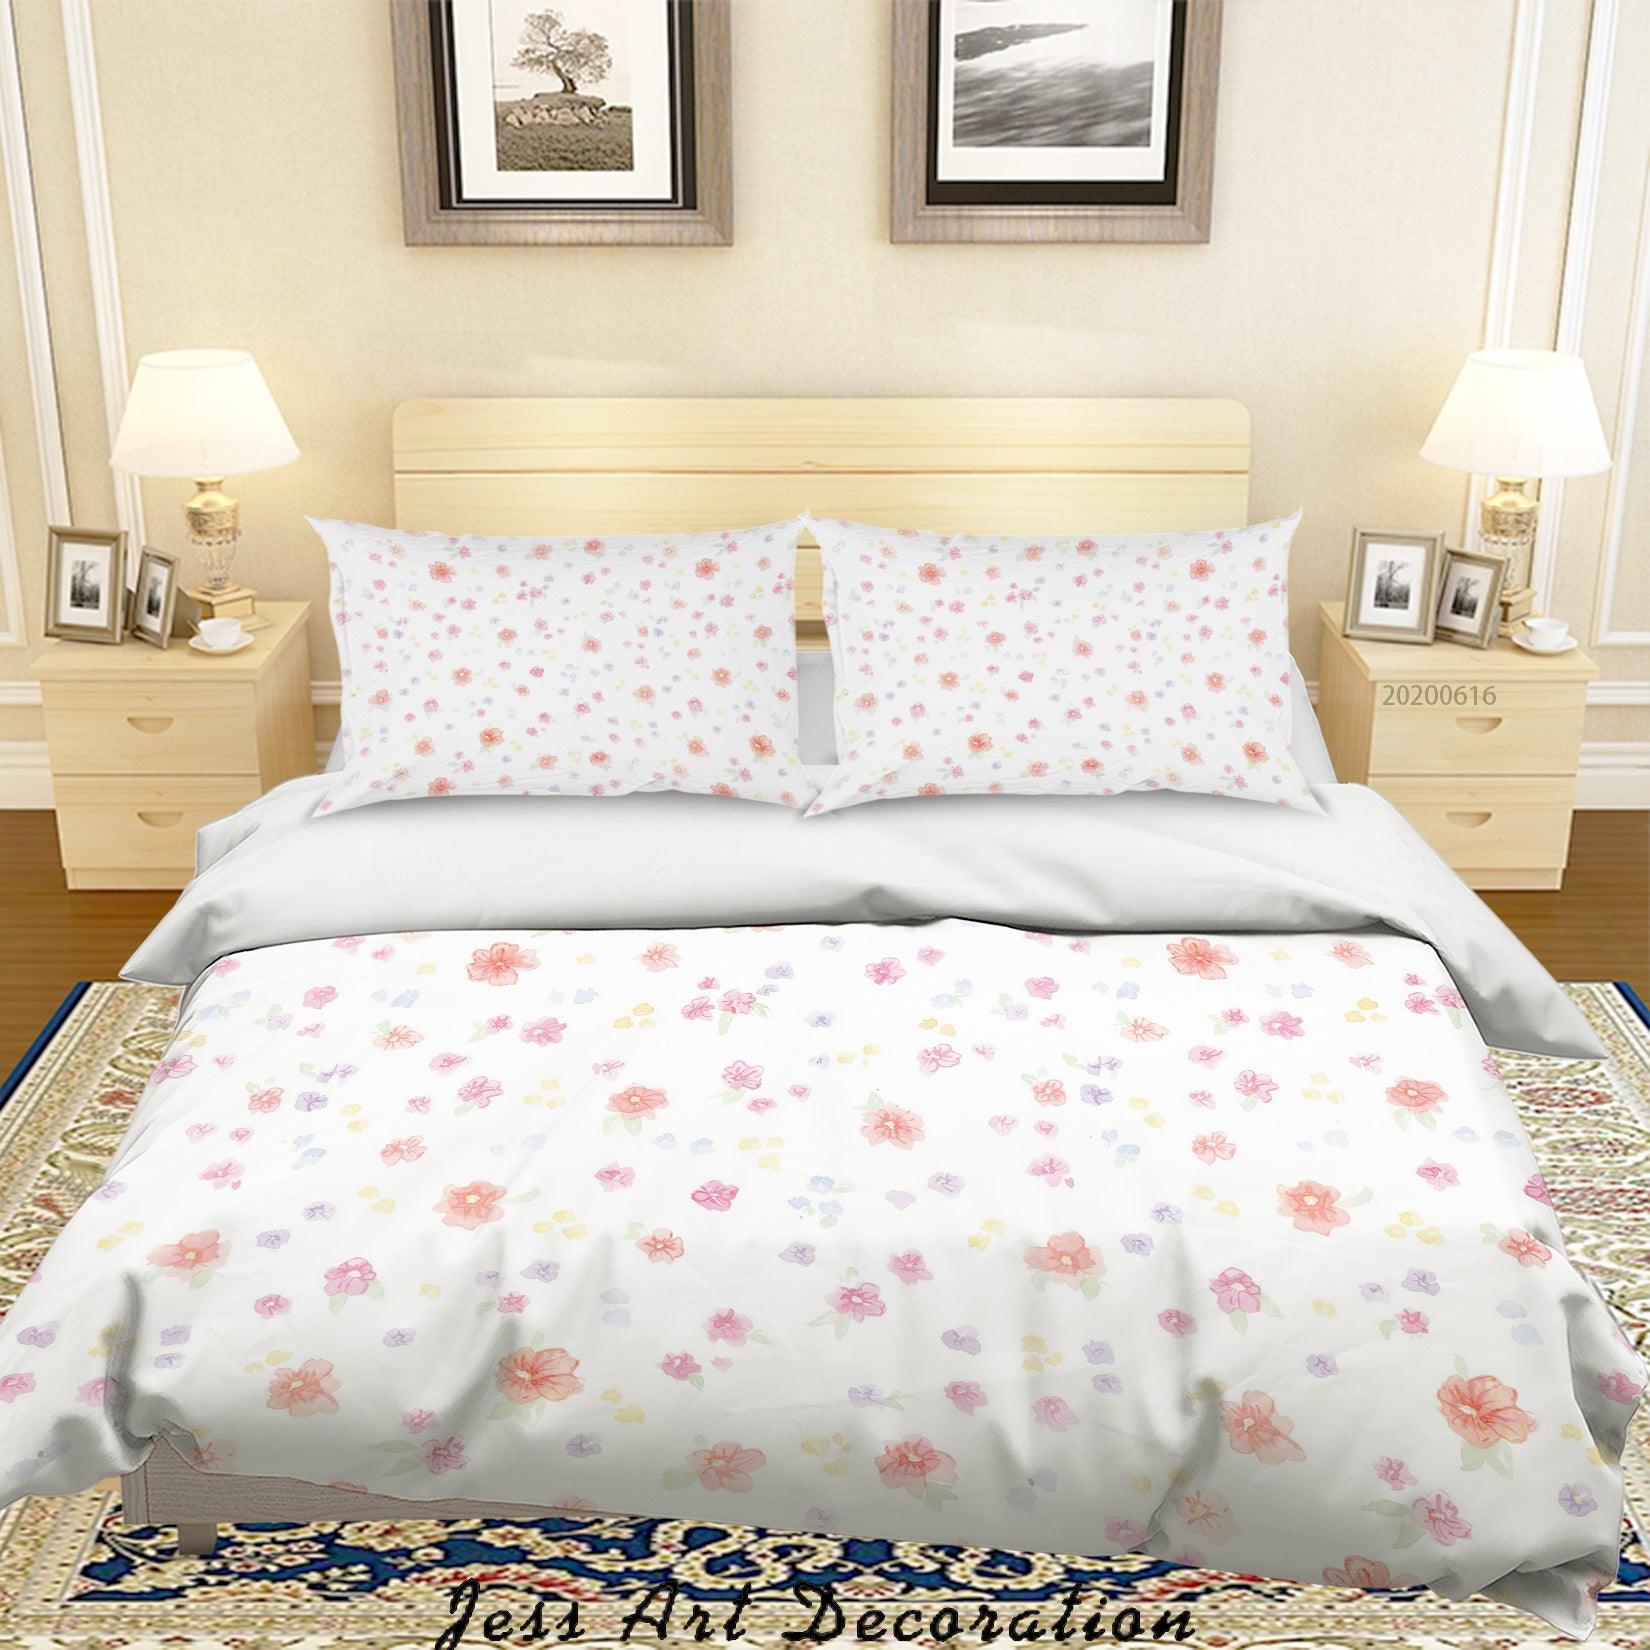 3D White Floral Quilt Cover Set Bedding Set Duvet Cover Pillowcases SF40- Jess Art Decoration